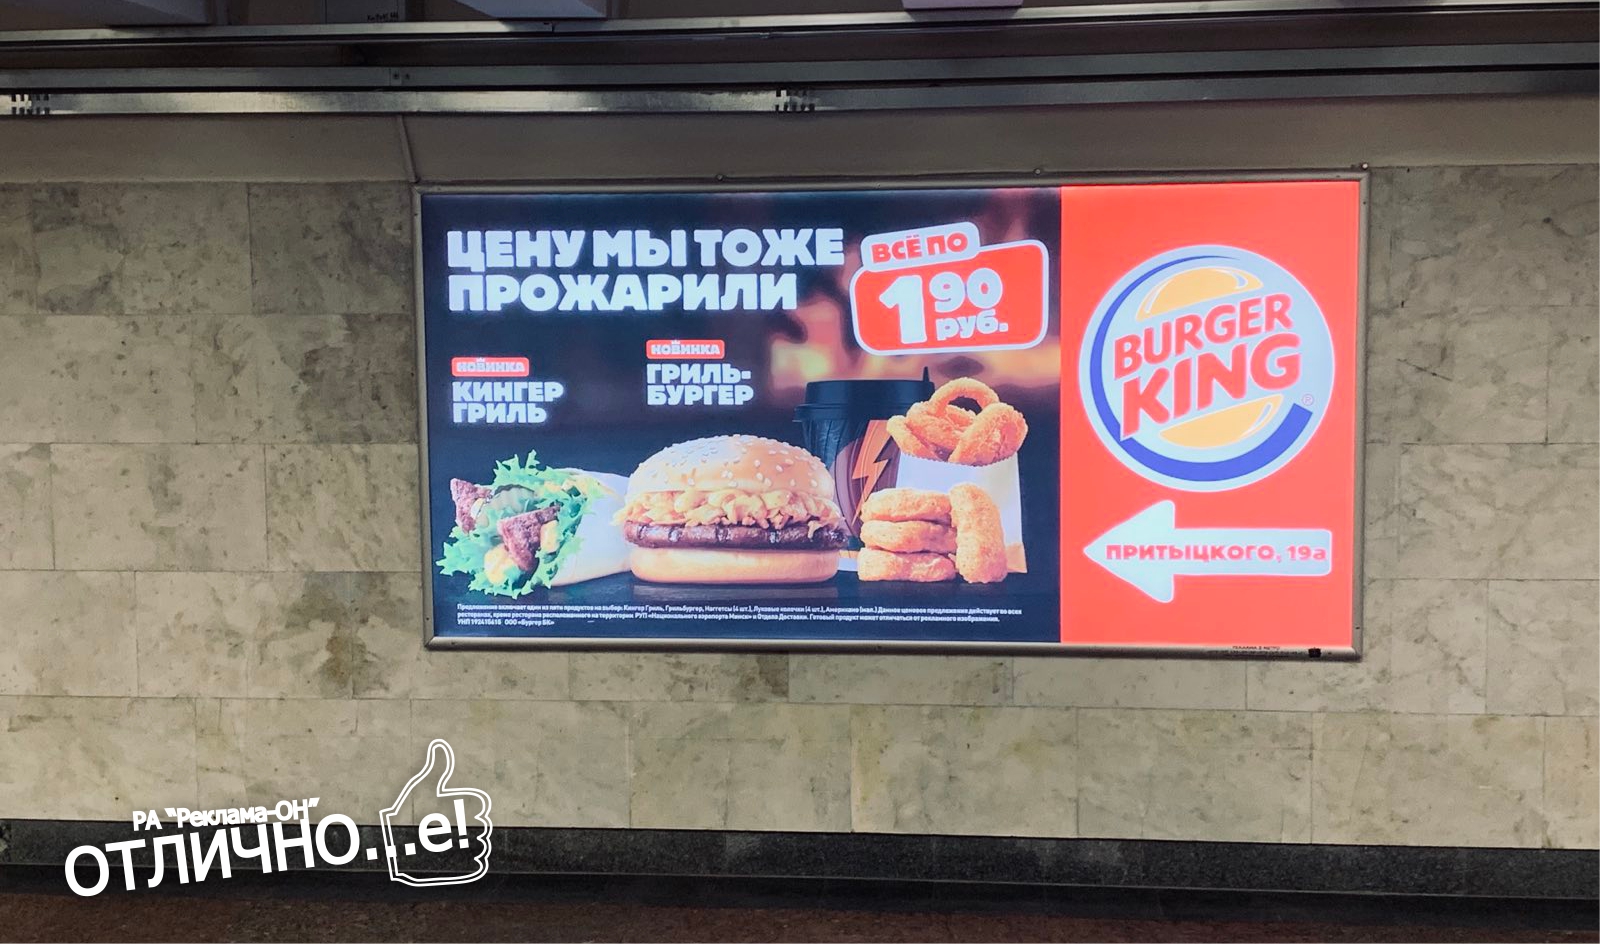 Рекламное место на станции метро Пушкинская reklama-on.by